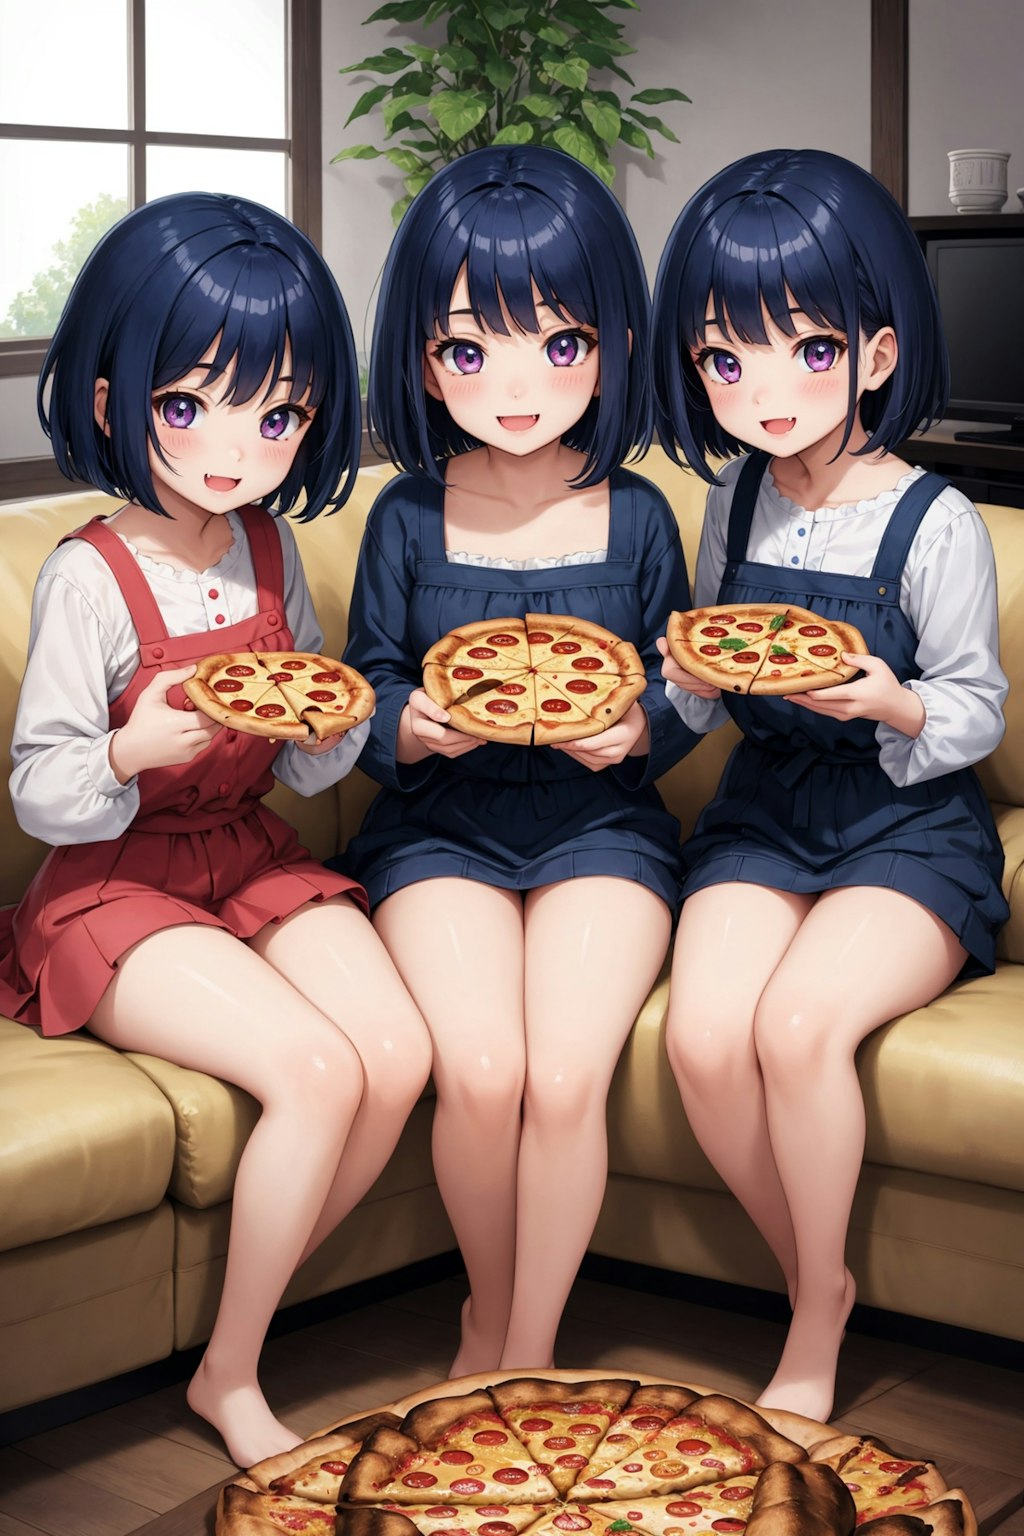 11月20日はピザの日 3姉妹でピザパーティ